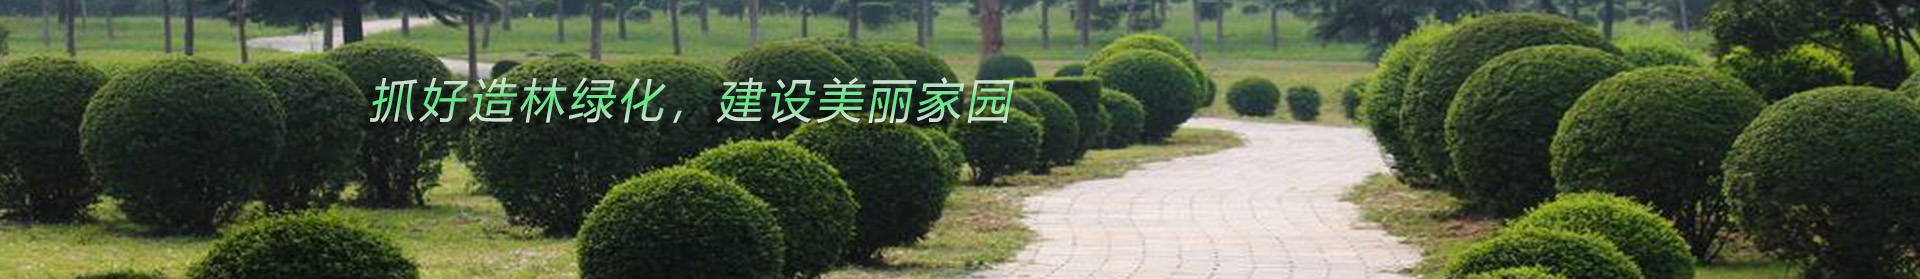 贵州园林绿化